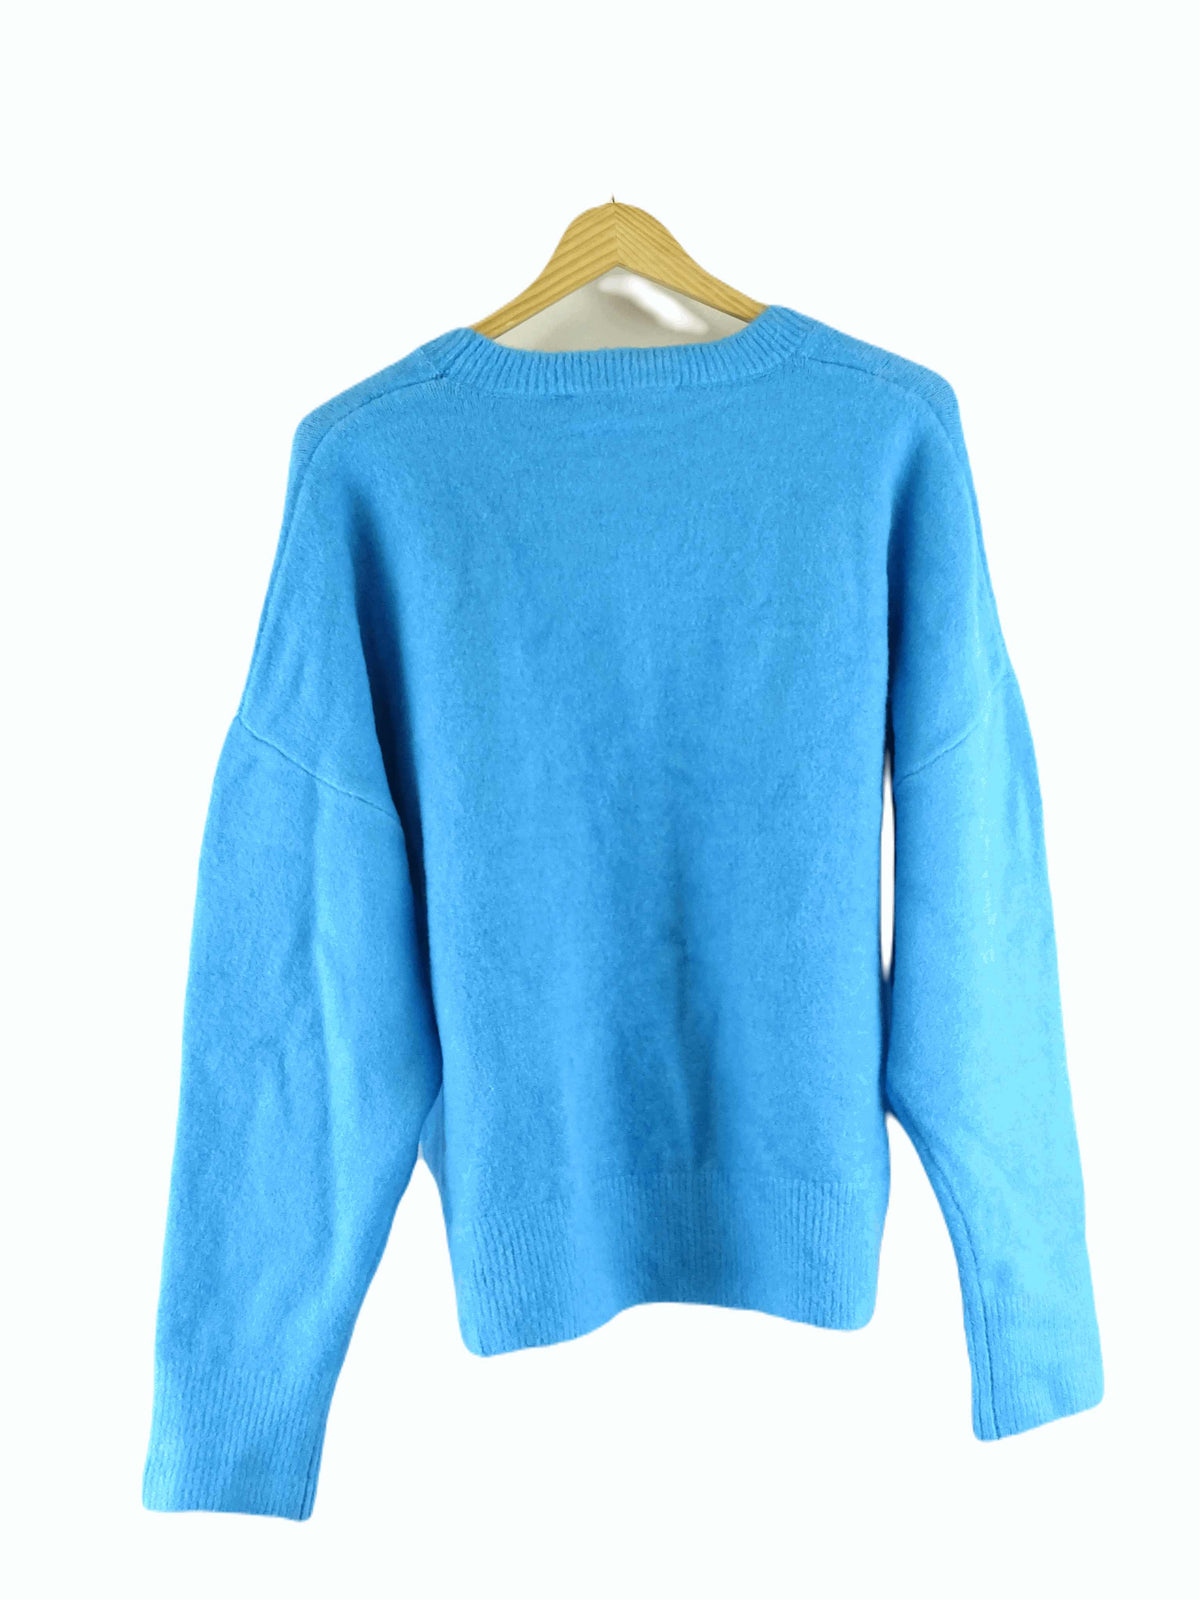 Zara Blue Knit Jumper XL